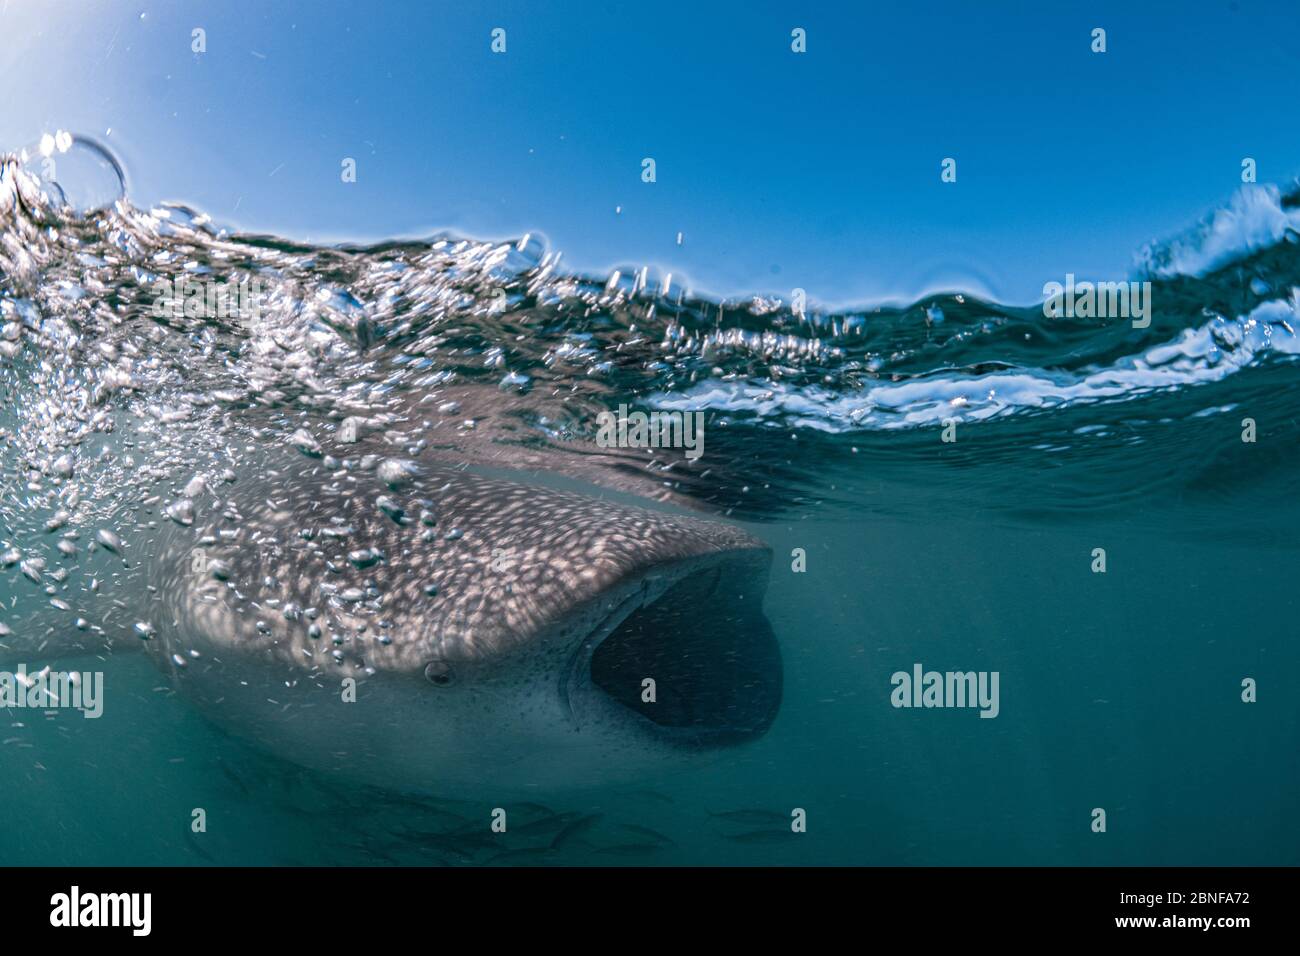 Un tiburón ballena juvenil que se alimenta justo debajo de la superficie Foto de stock